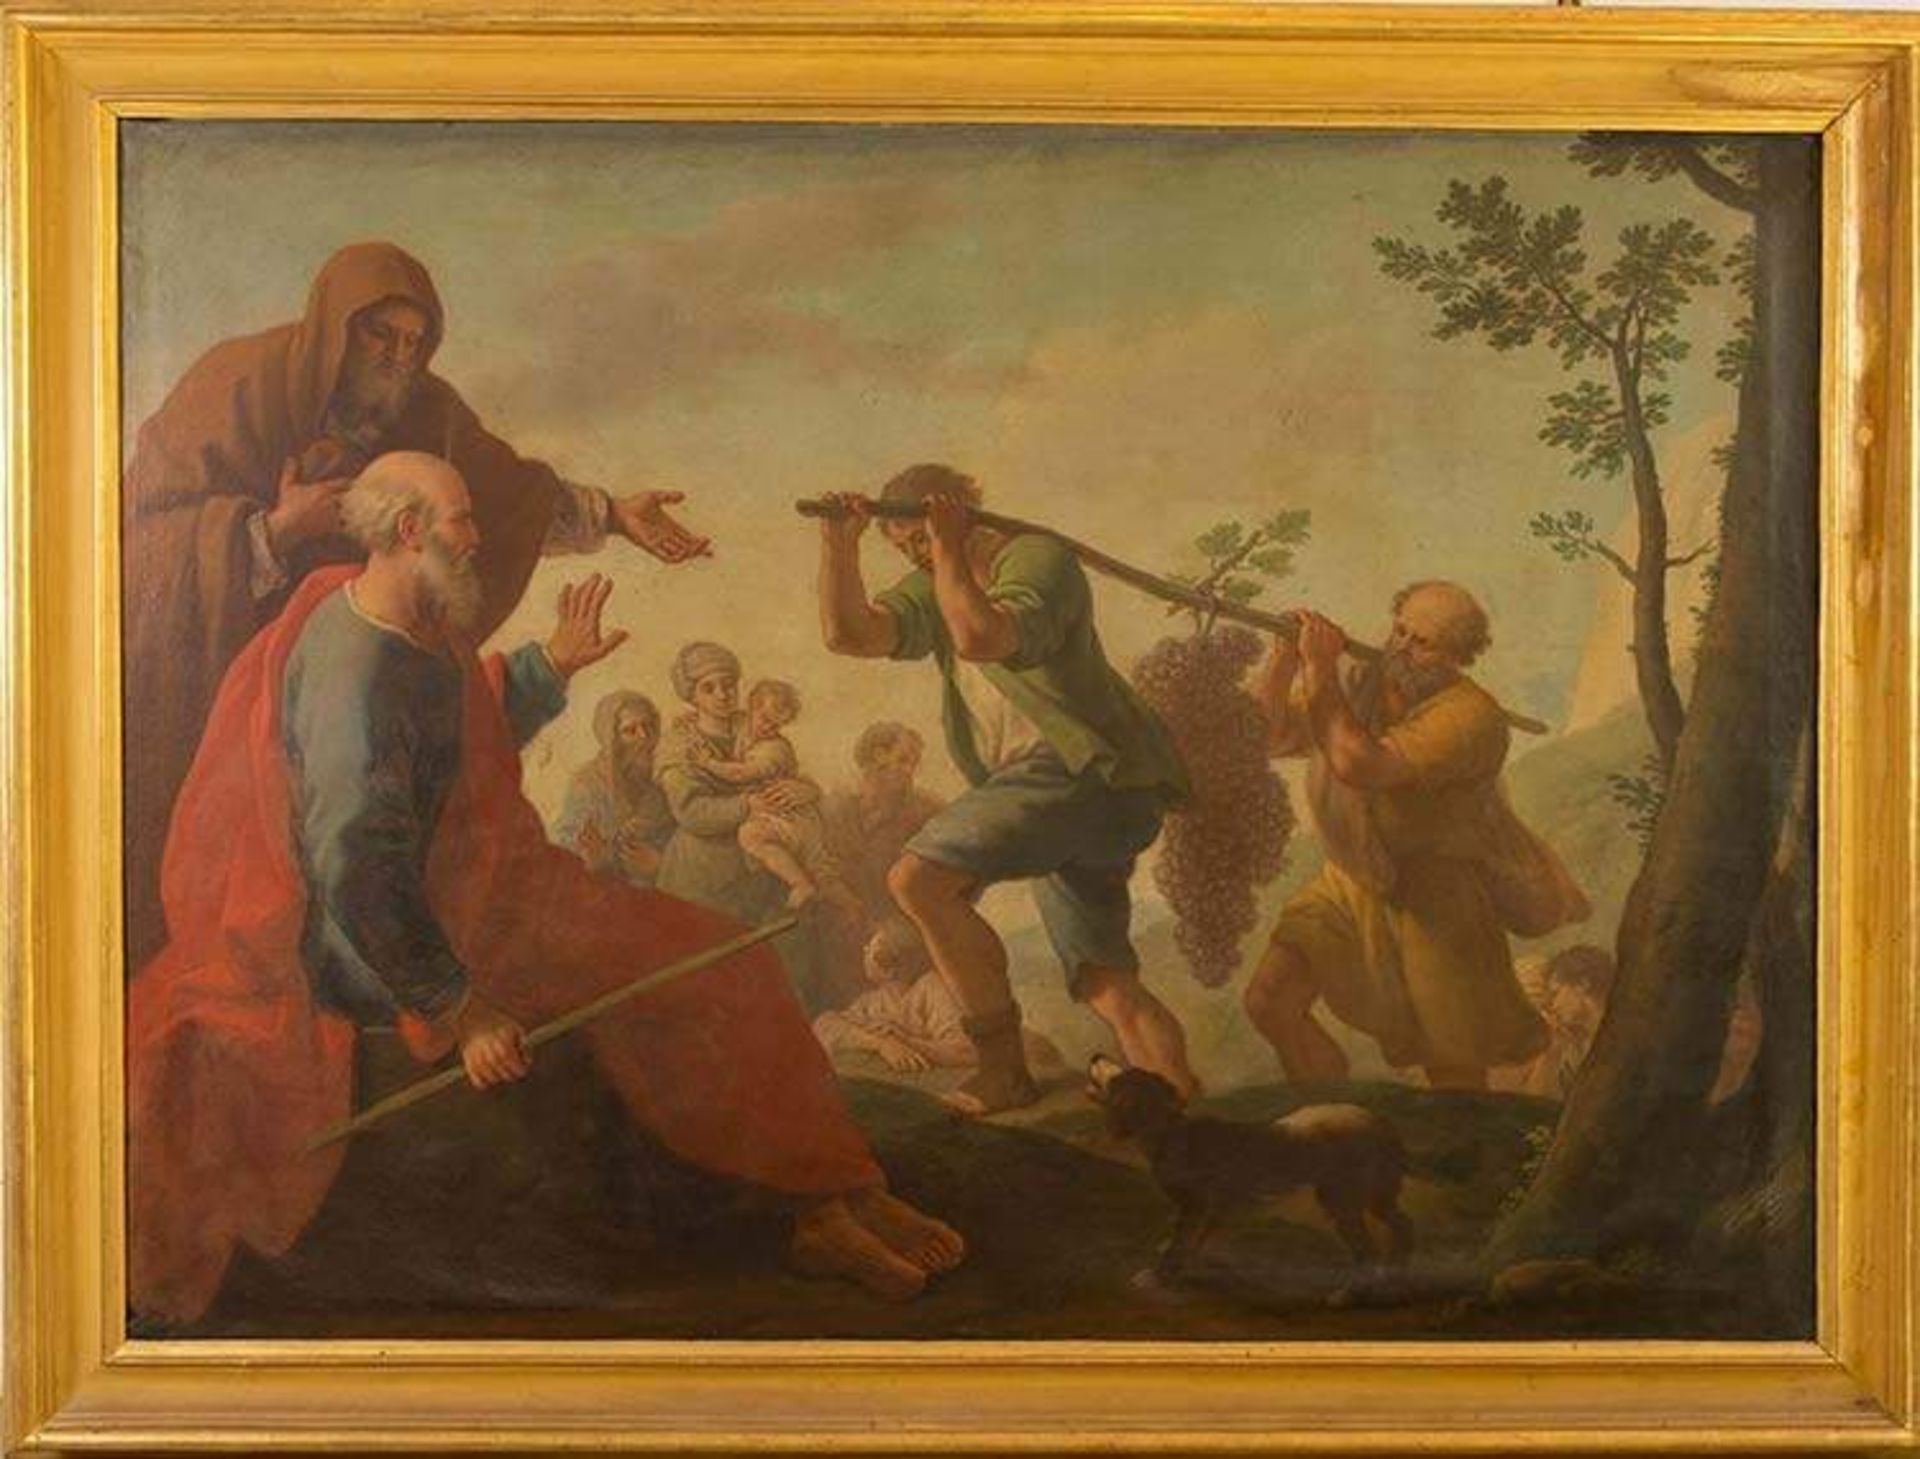 PARROCEL, Etienne, detto le Romain (1696-1776) "Mosè e l'uva". Olio su tela. Cm144,5x202,5. Opera